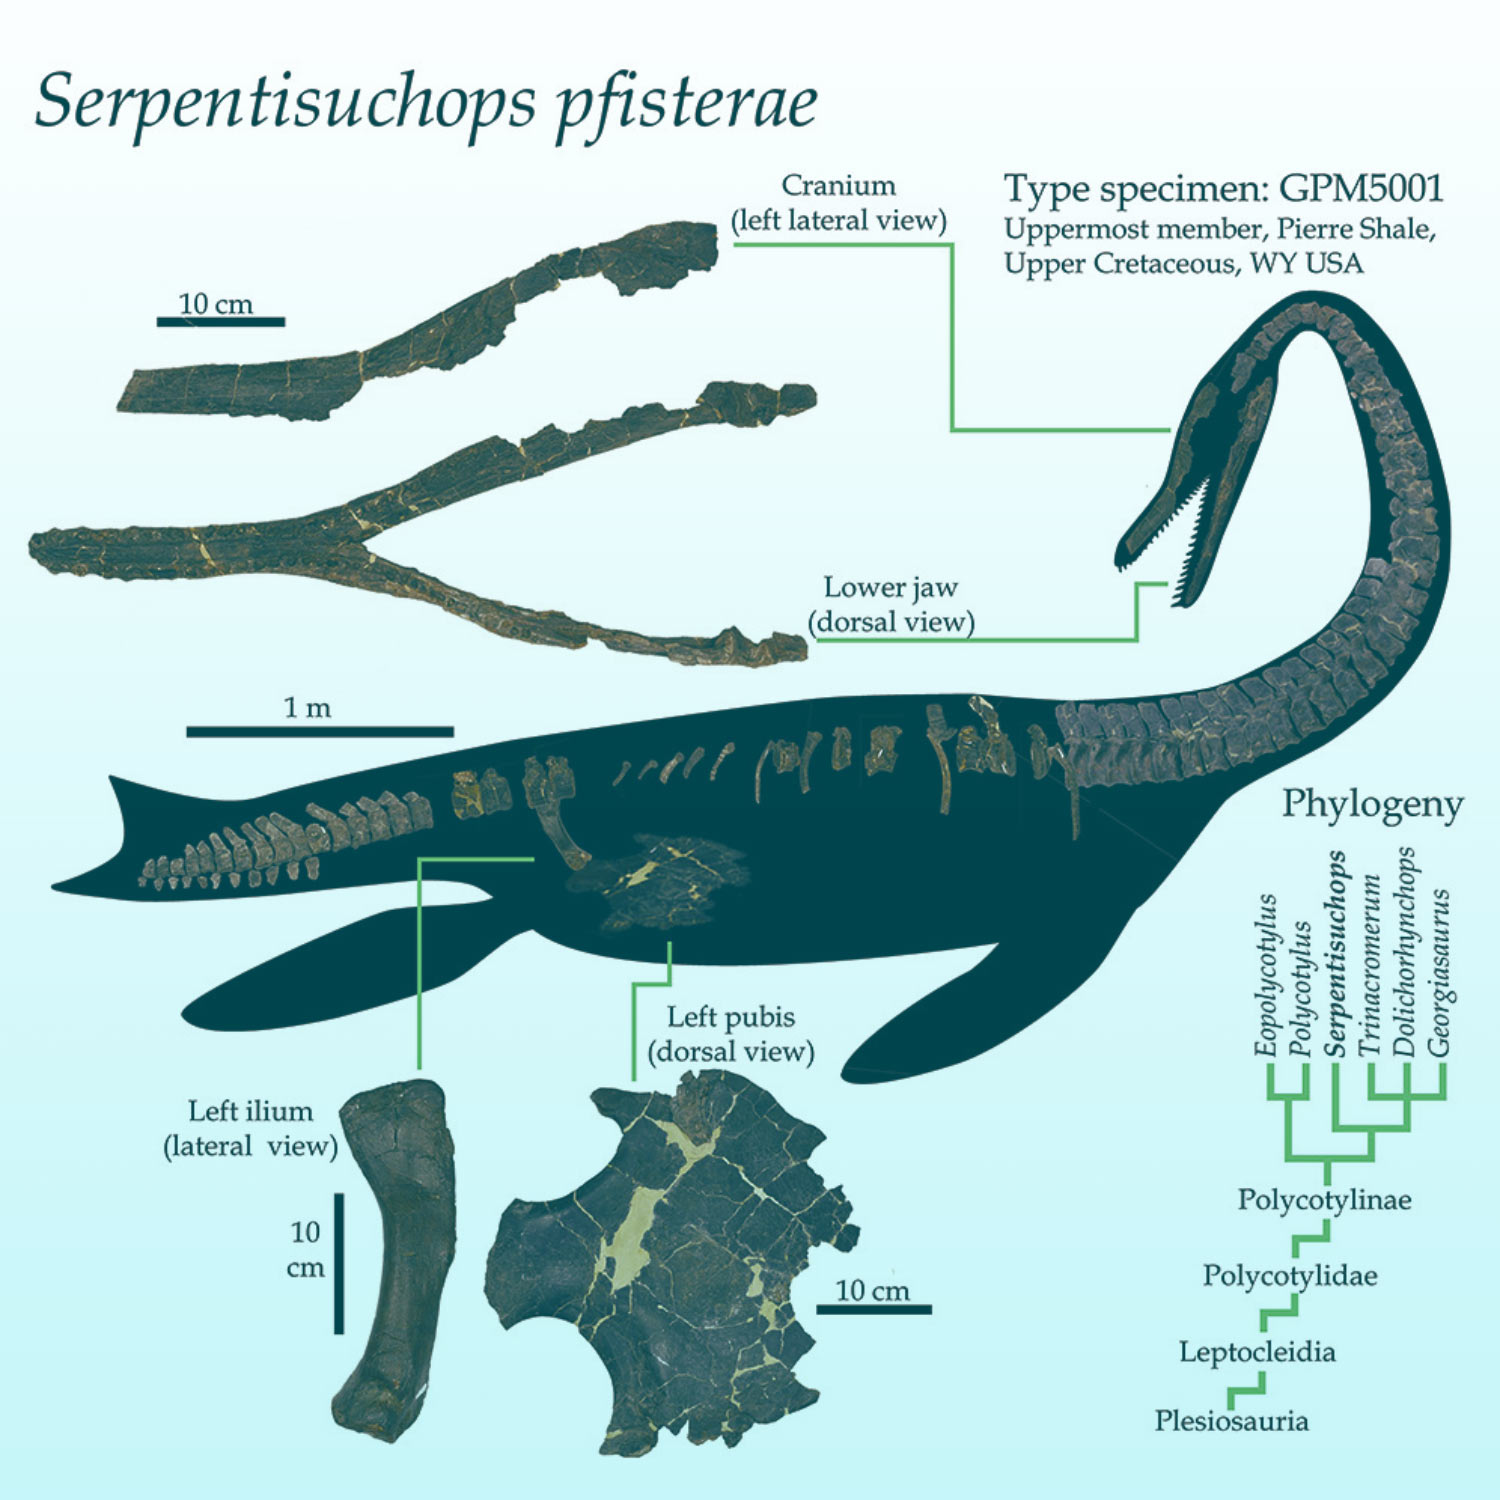 Serpentissuchops pfisterae